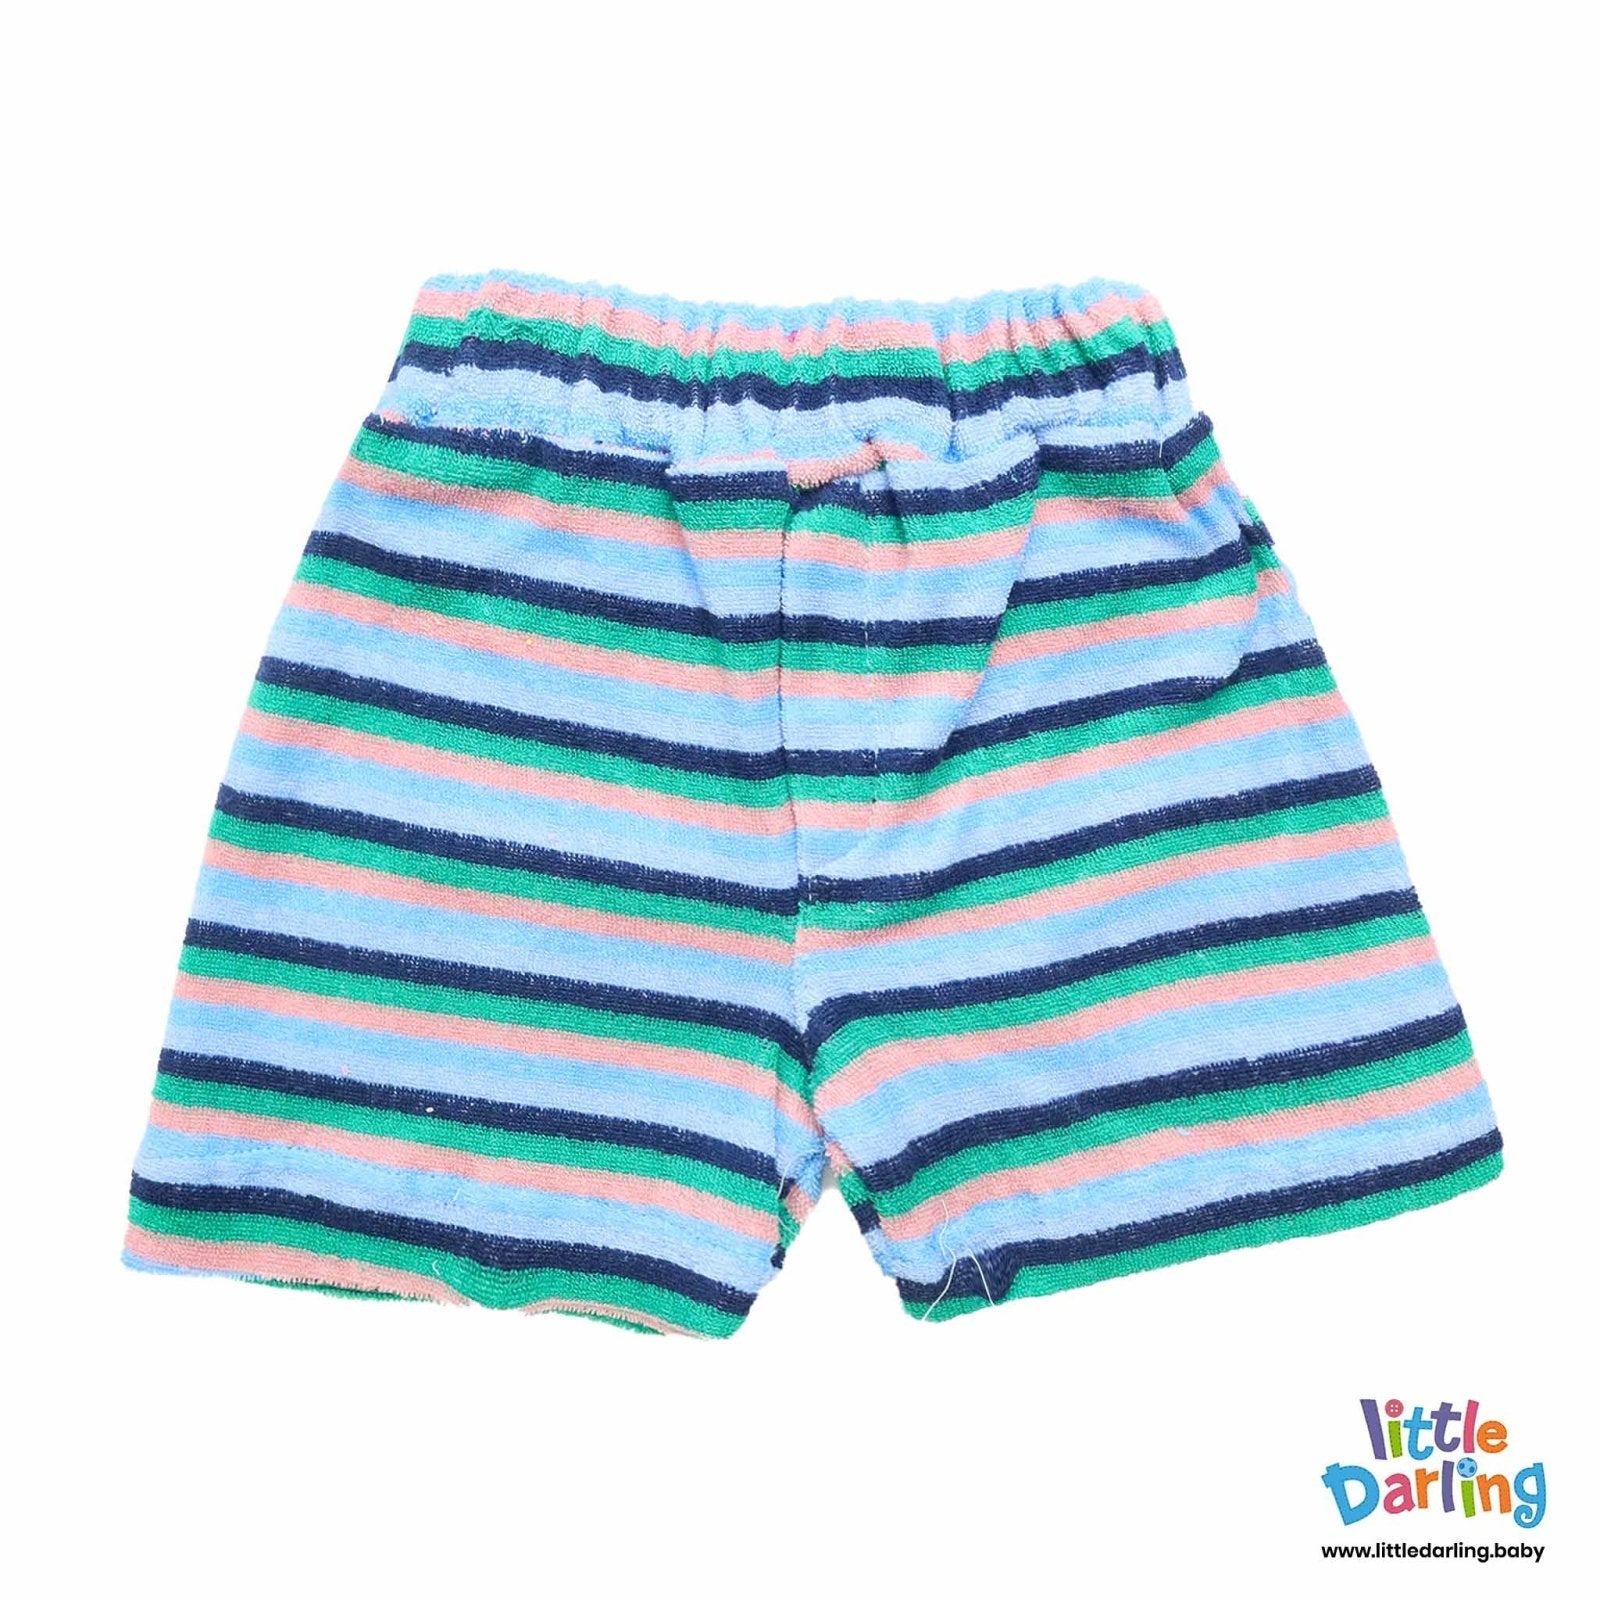 Fancy Swimming Shorts Blue Strips by Little Darling